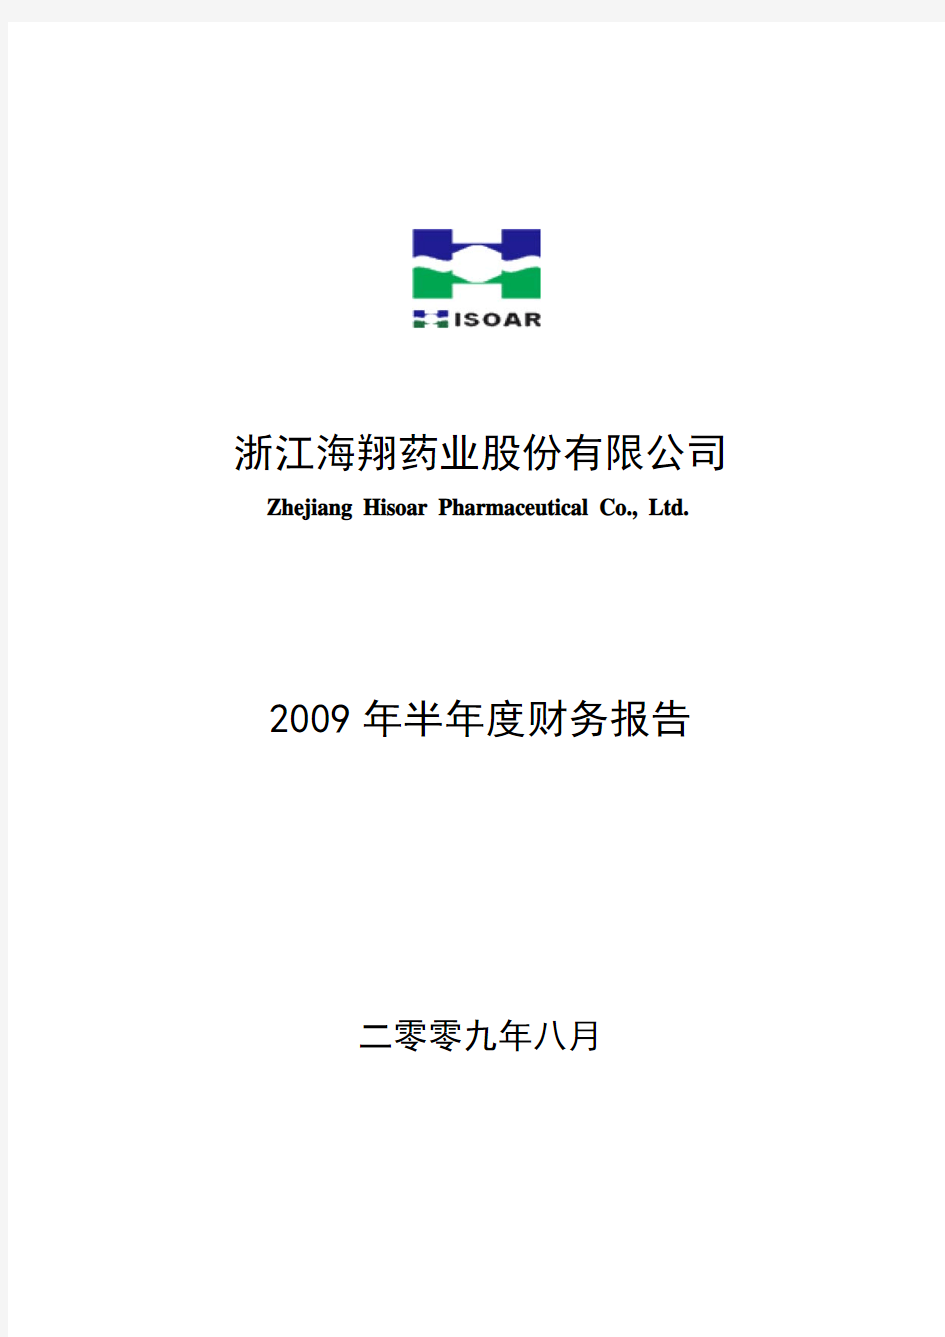 2009年半年度财务报告